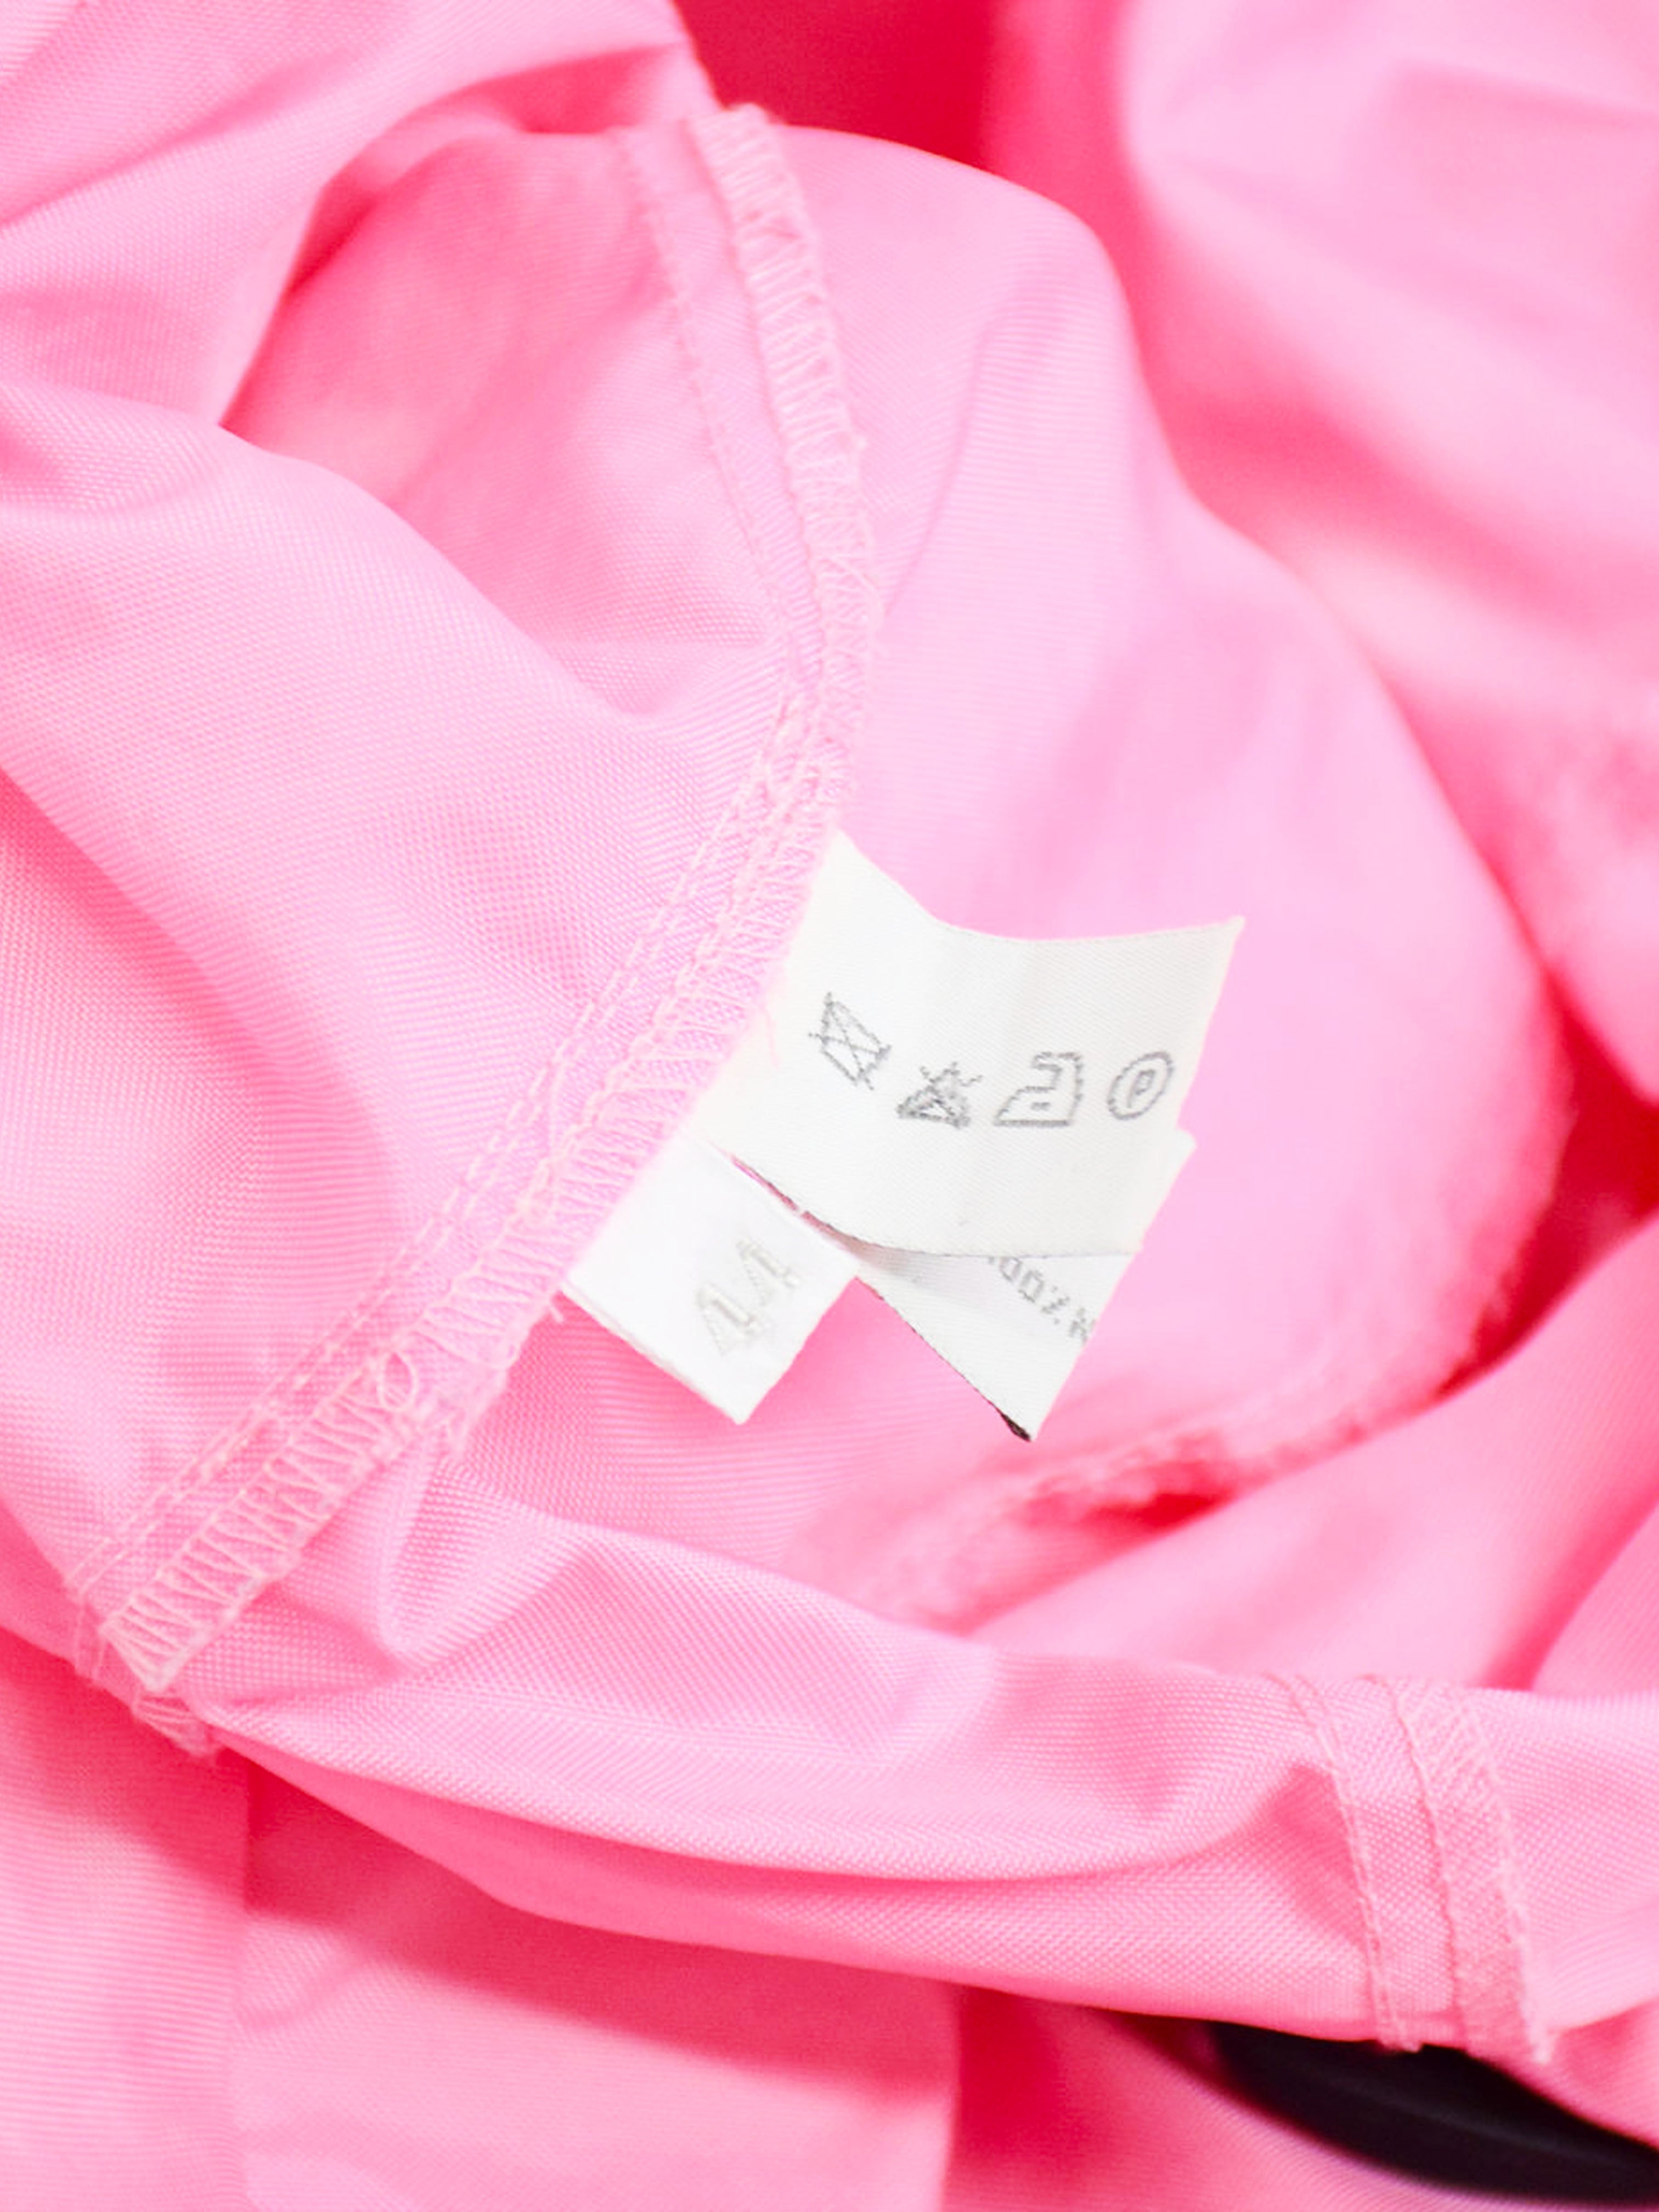 Miu Miu SS 1999 Pink Polyester Jacket